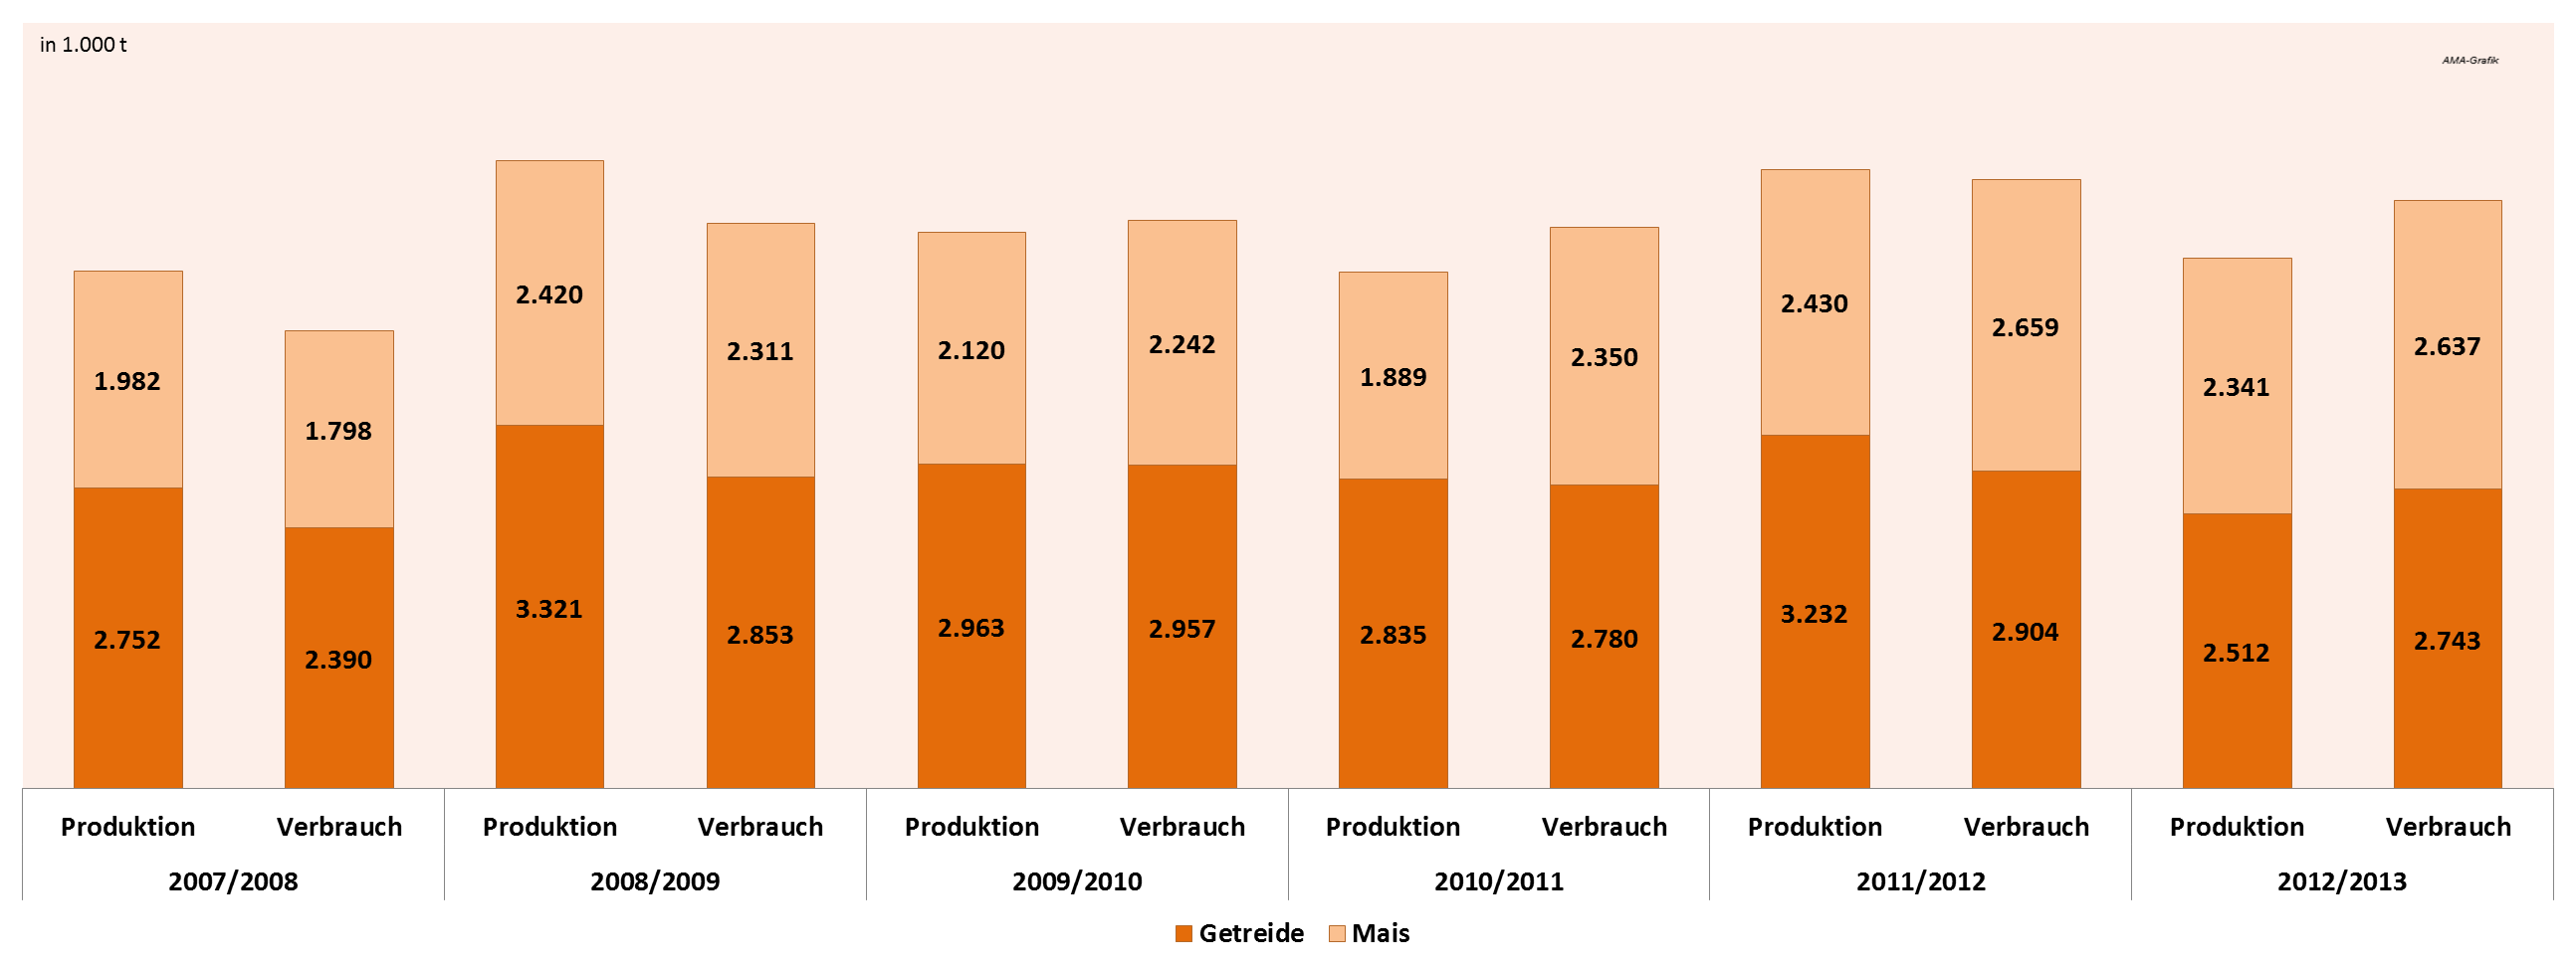 Österreich - Getreidebilanz 2007/2008 2012/2013 Inlandsverbrauch steigt